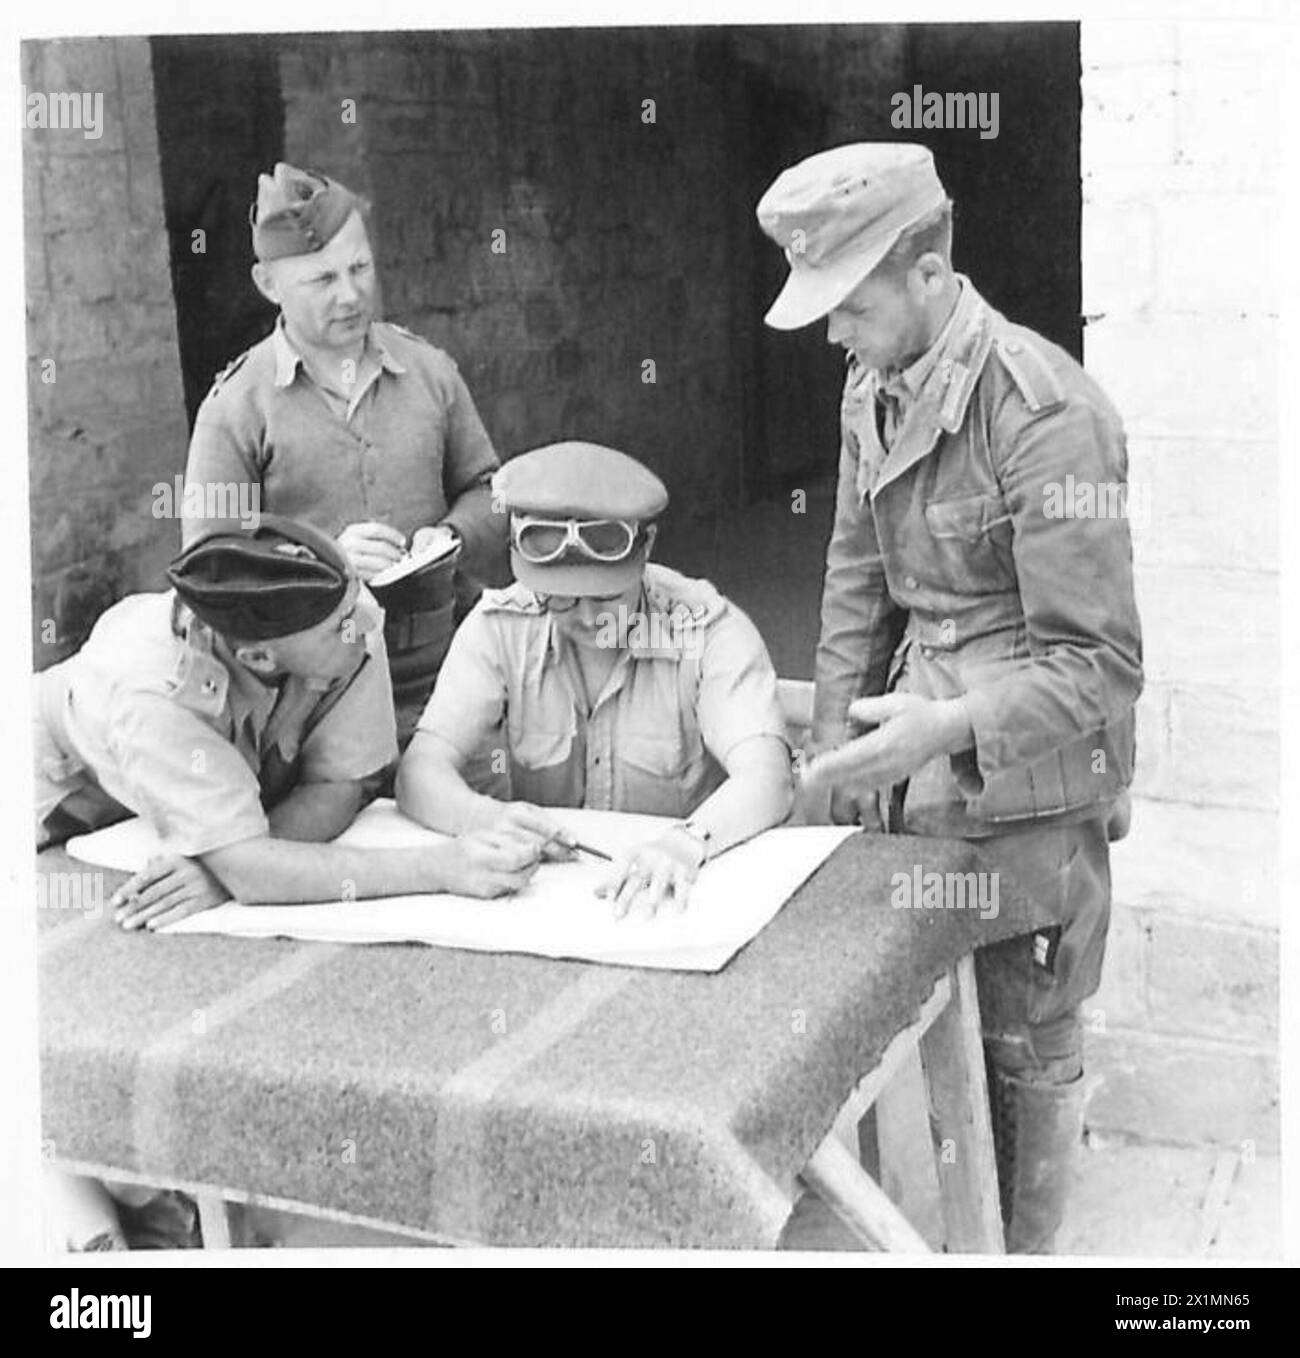 DEUTSCHE GEFANGENE IN DER westlichen WÜSTE - Ein deutscher Gefangener, der von britischen Offizieren, der britischen Armee, verhört wird Stockfoto